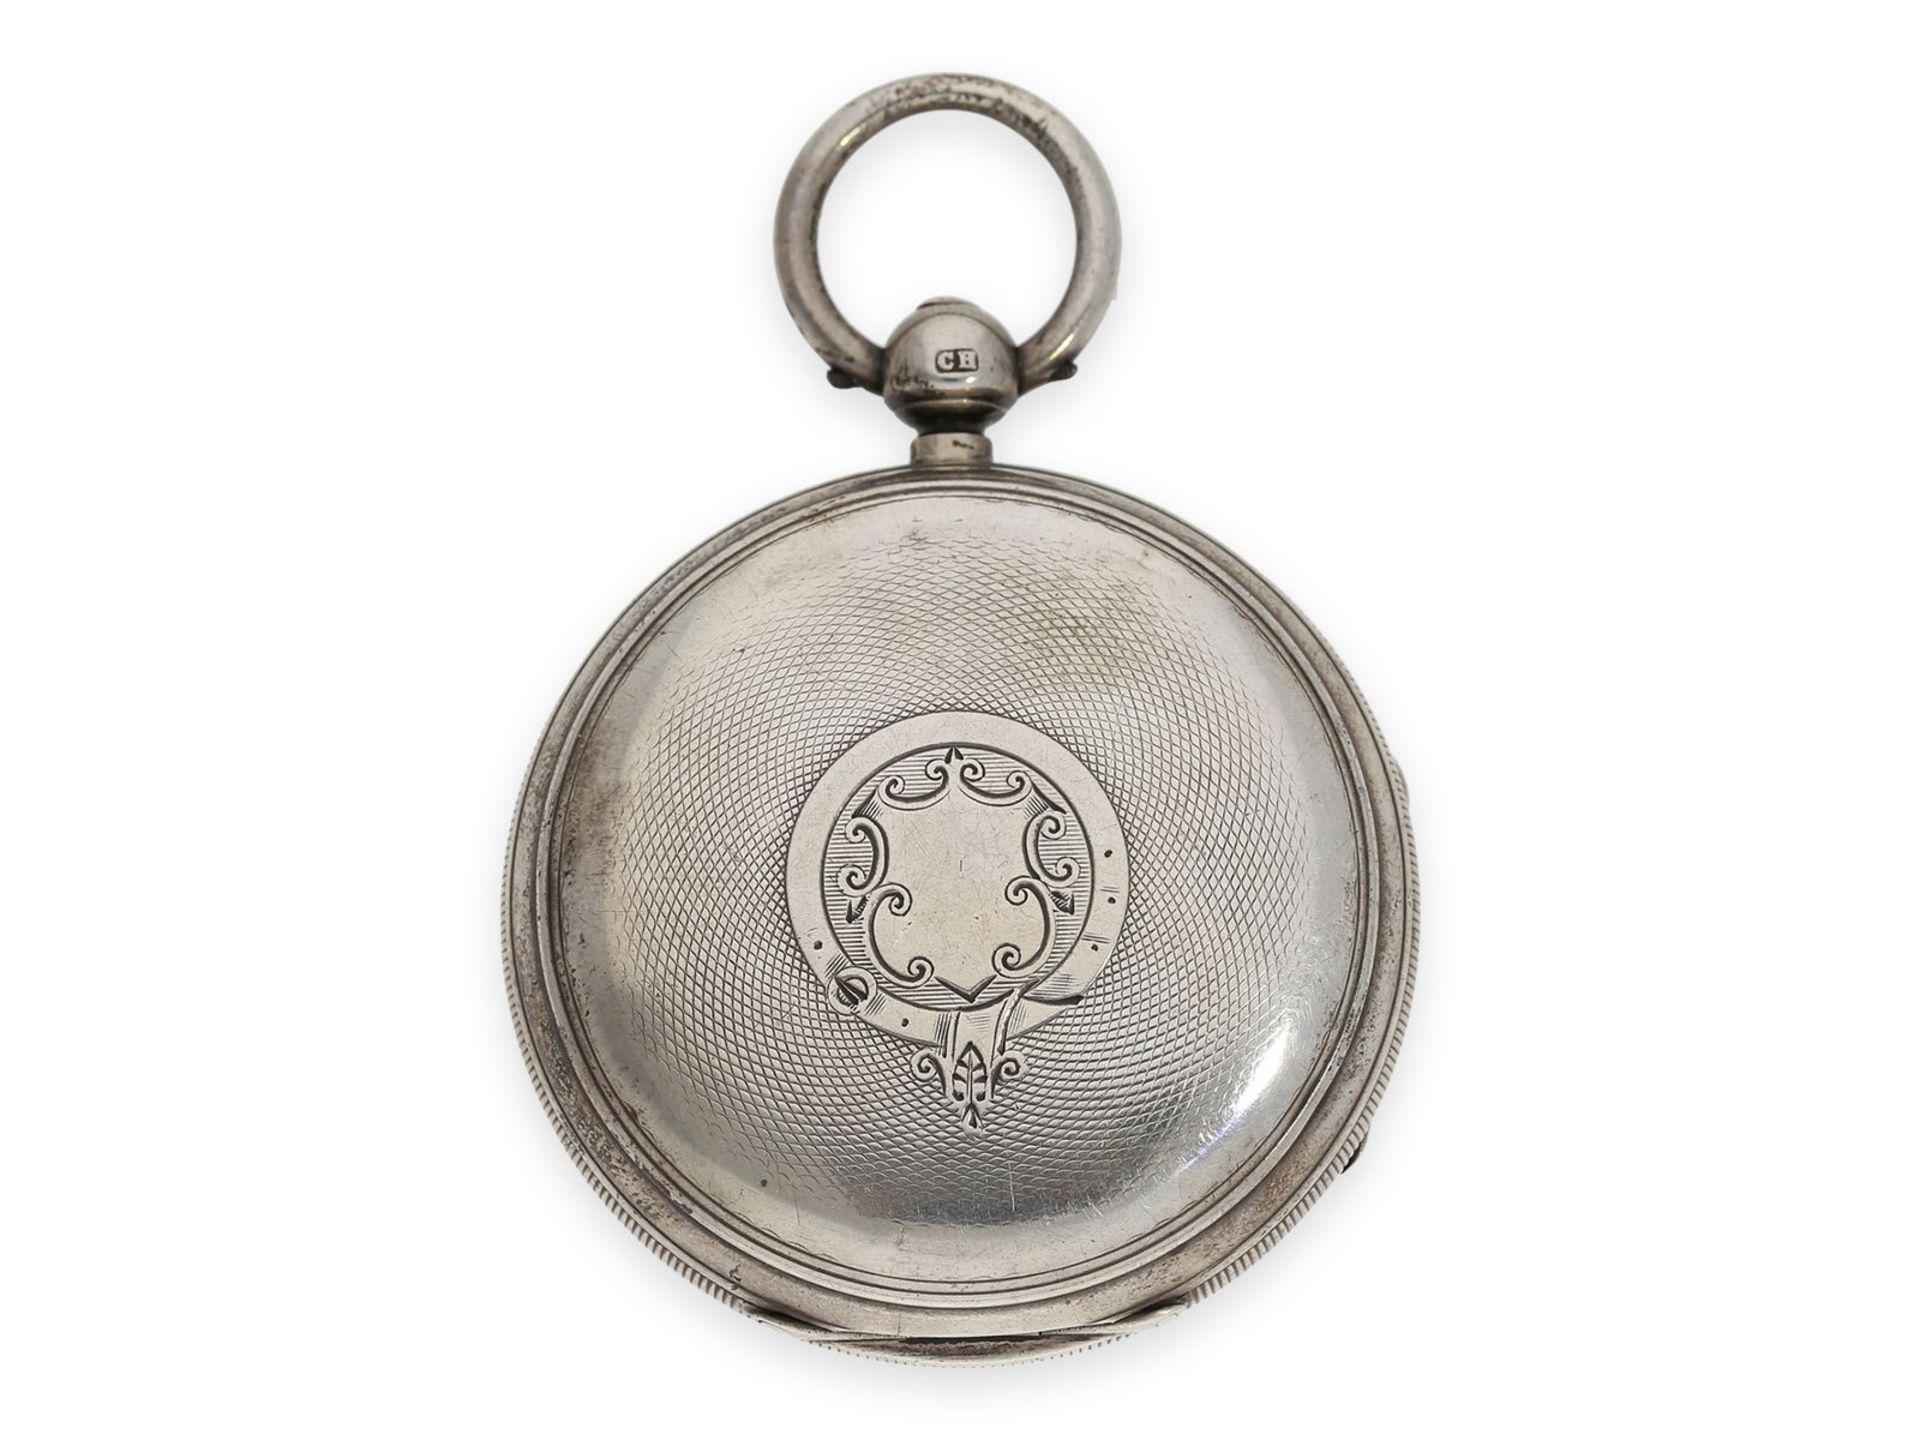 Taschenuhr: Rarität, schottische Taschenuhr mit 24-Stunden-Zifferblatt, Hallmarks 1885, signiert - Bild 5 aus 5